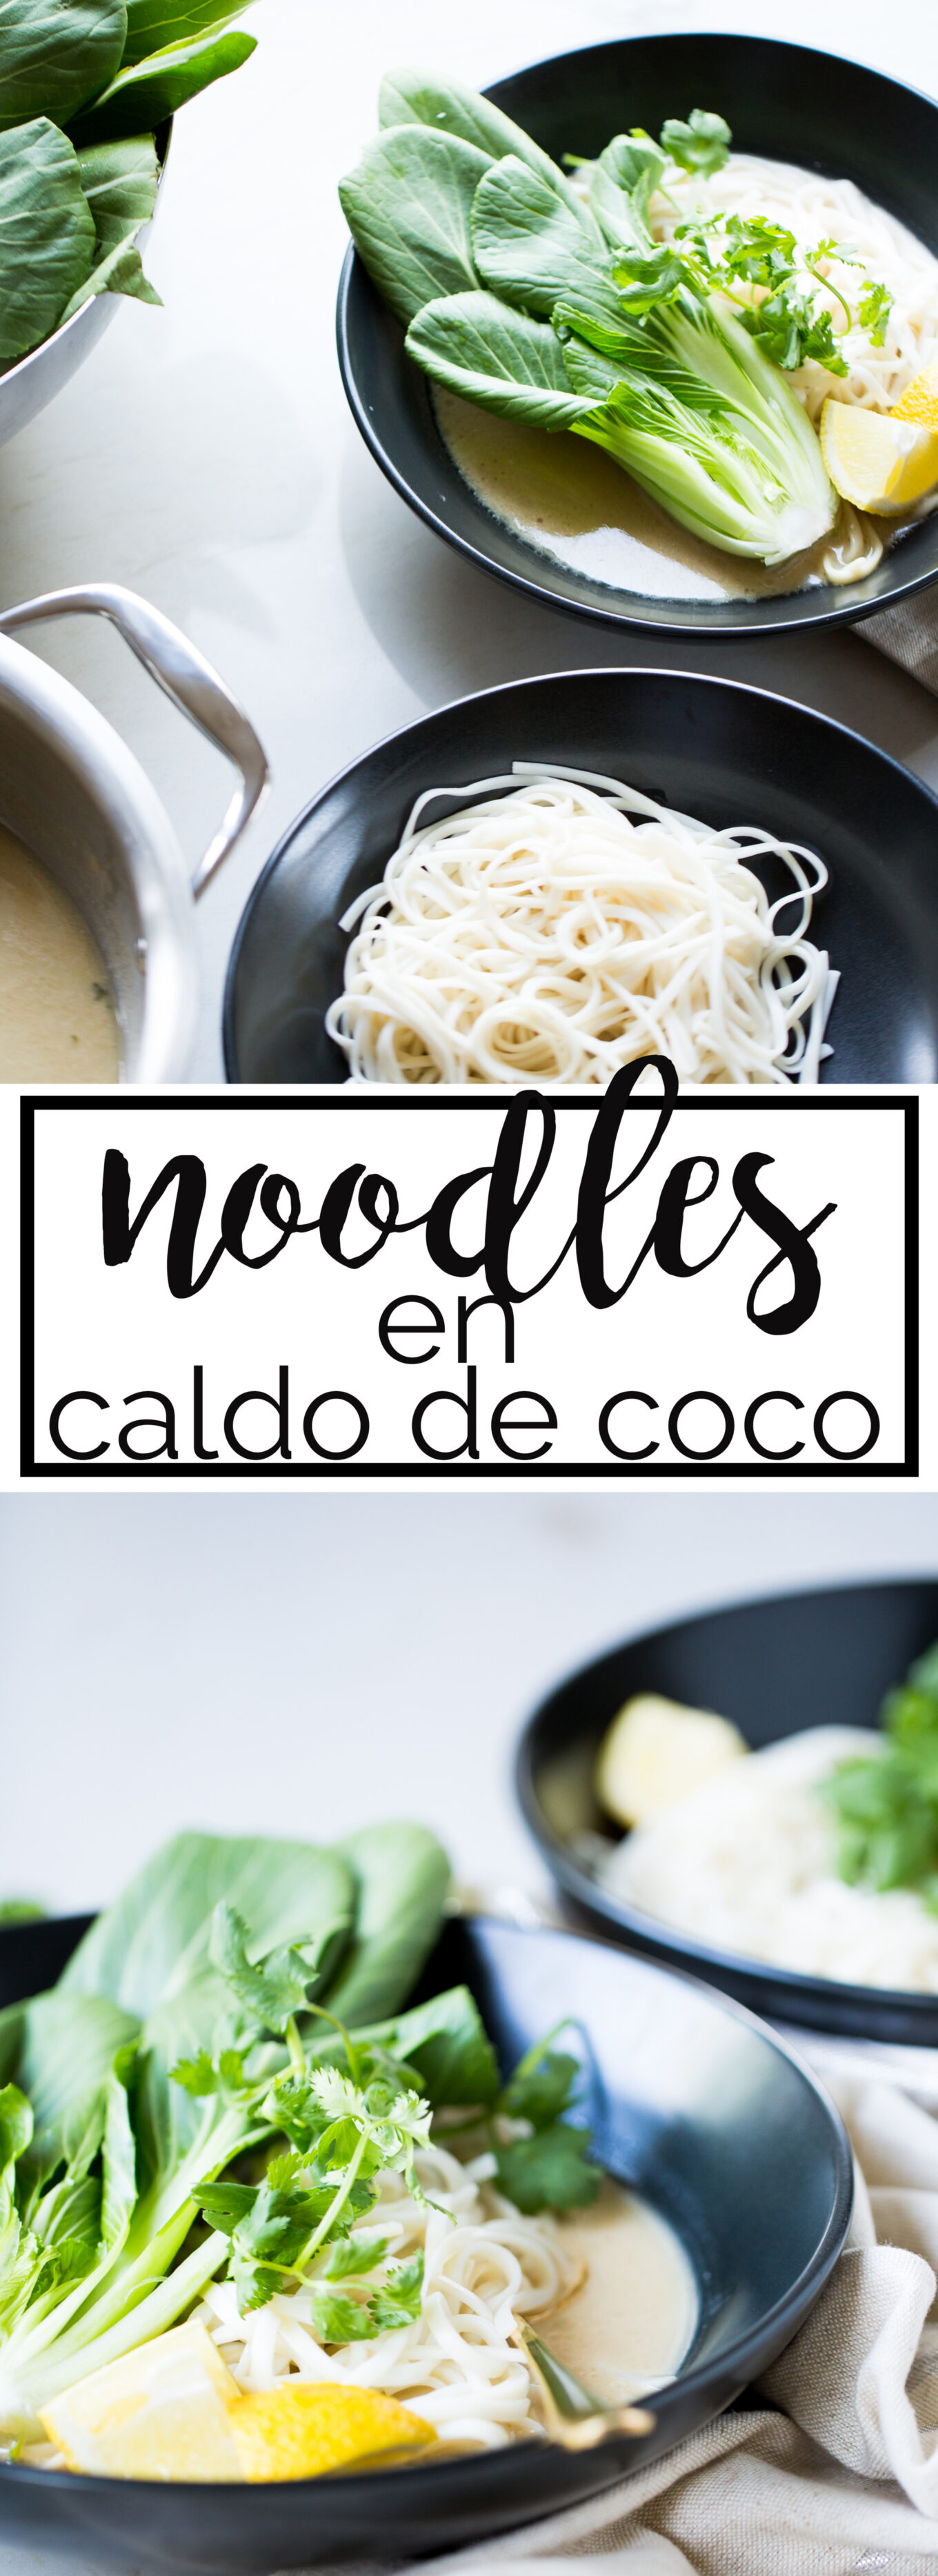 Receta vegana de noodles en caldo de coco. Receta llena de ingredientes saludables para nuestra salud. Atrévete a probar una sopa nutritiva totalmente diferente.